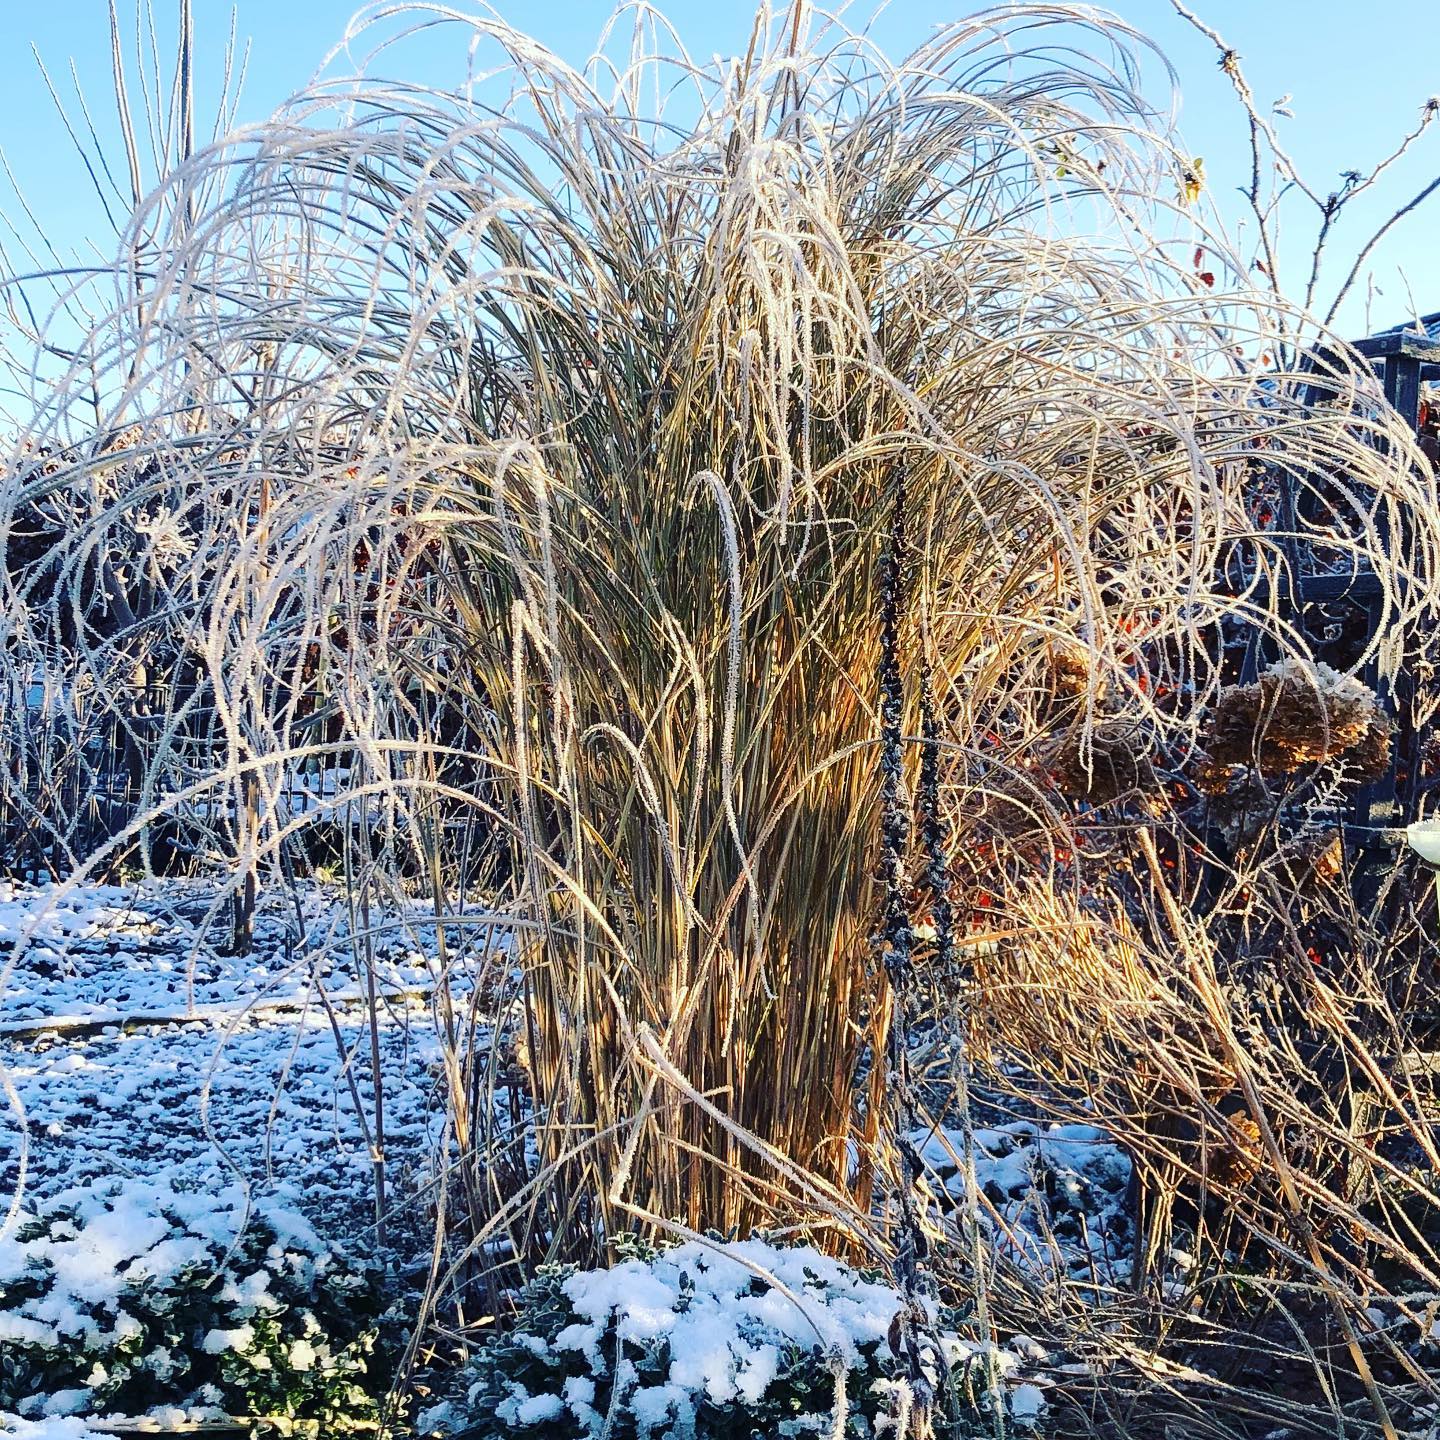 ELRFANTGRÆS • med rimfrost ❄️
•
#countrylivshave #mischanthussinensis #rimfrost #deterkoldtderude #denhvidehave